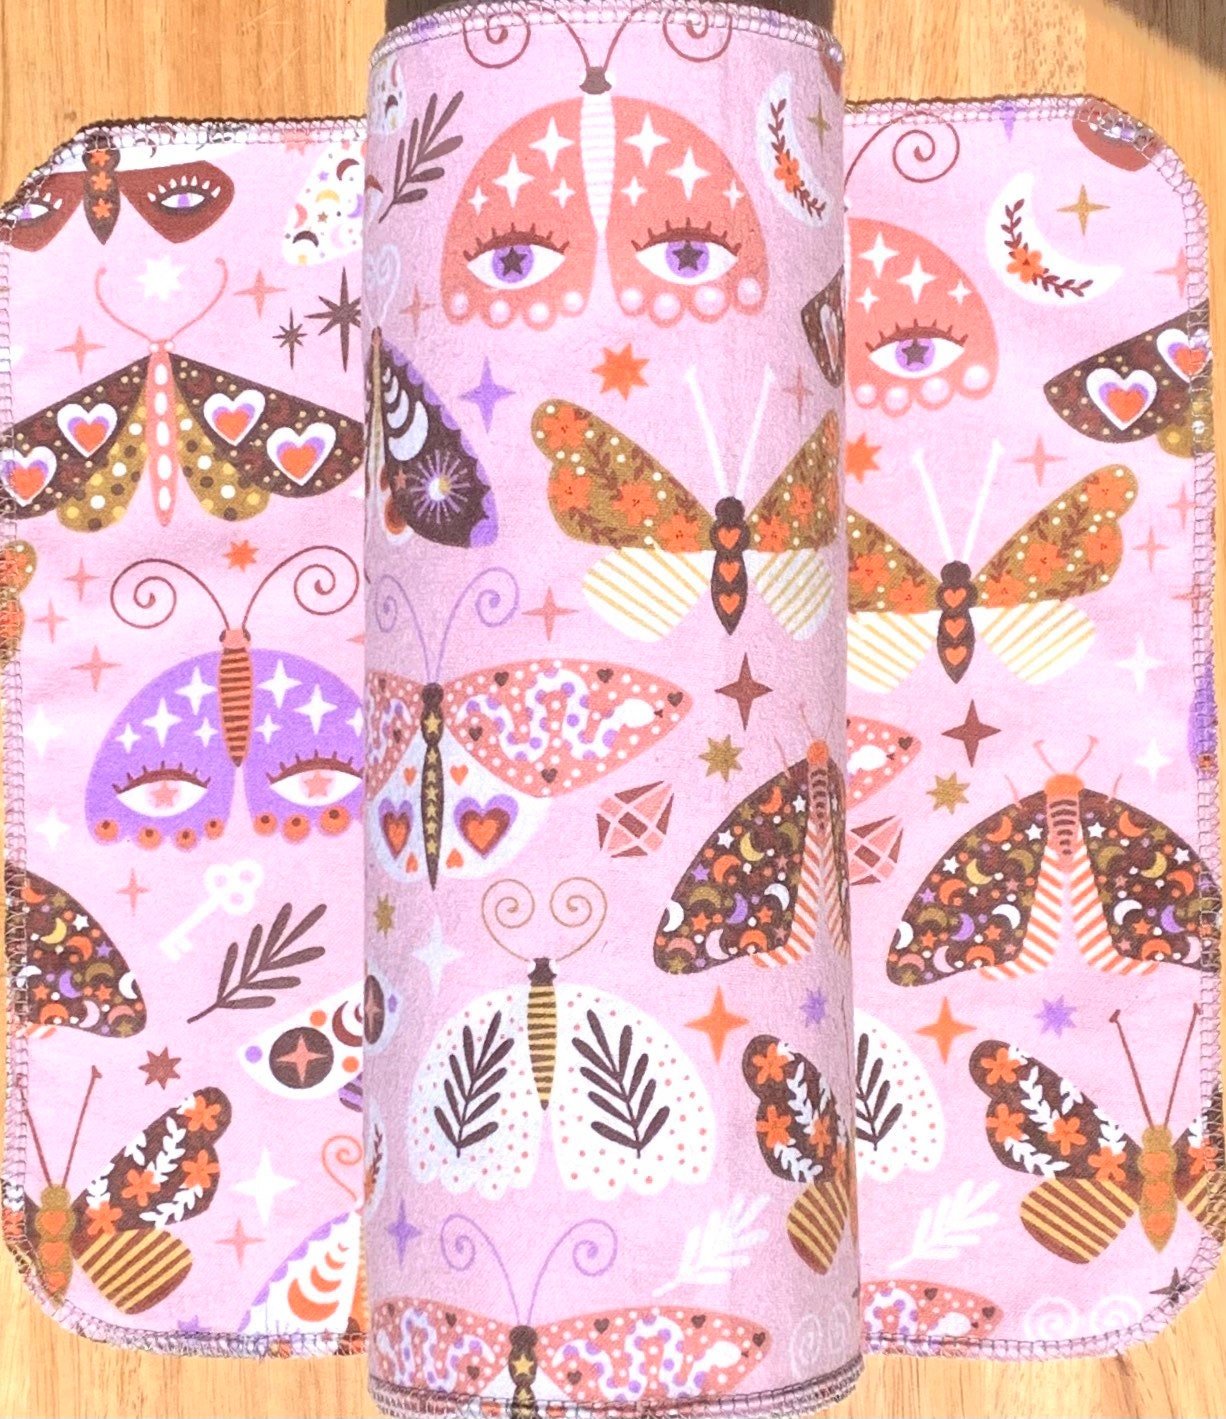 Dragonflies & Butterflies Paperless Towels || Unpaper Towels || Eco Sustainable Kitchen